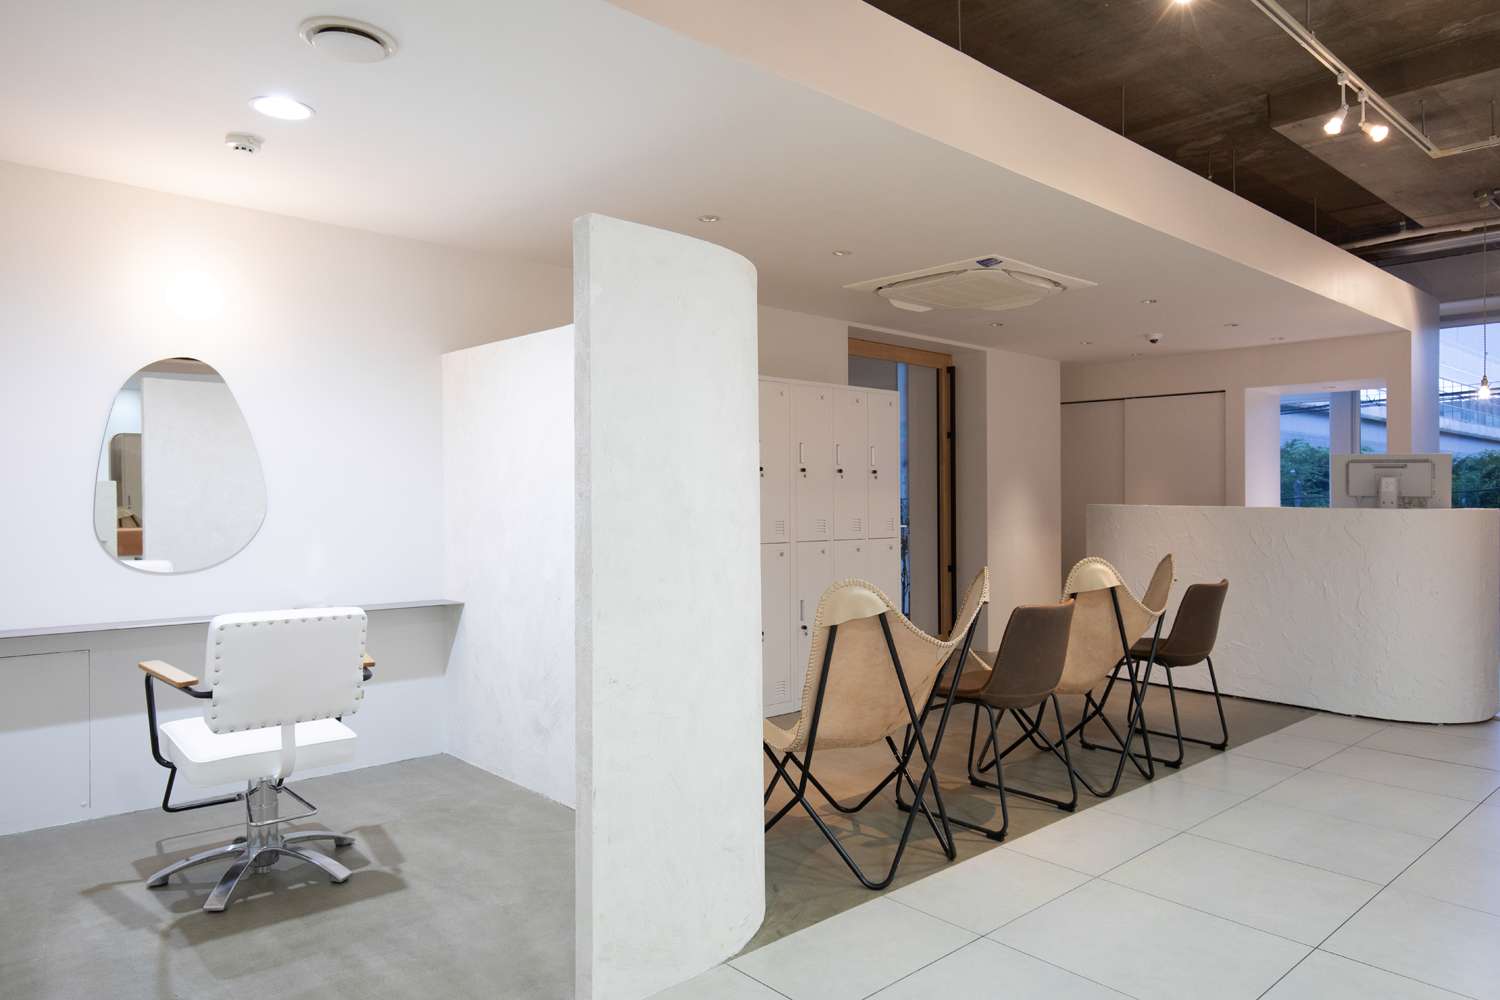 広島市で設計事務所と共につくるおしゃれな店舗設計、店舗デザイン、内装デザイン、空間デザインはasazu design office